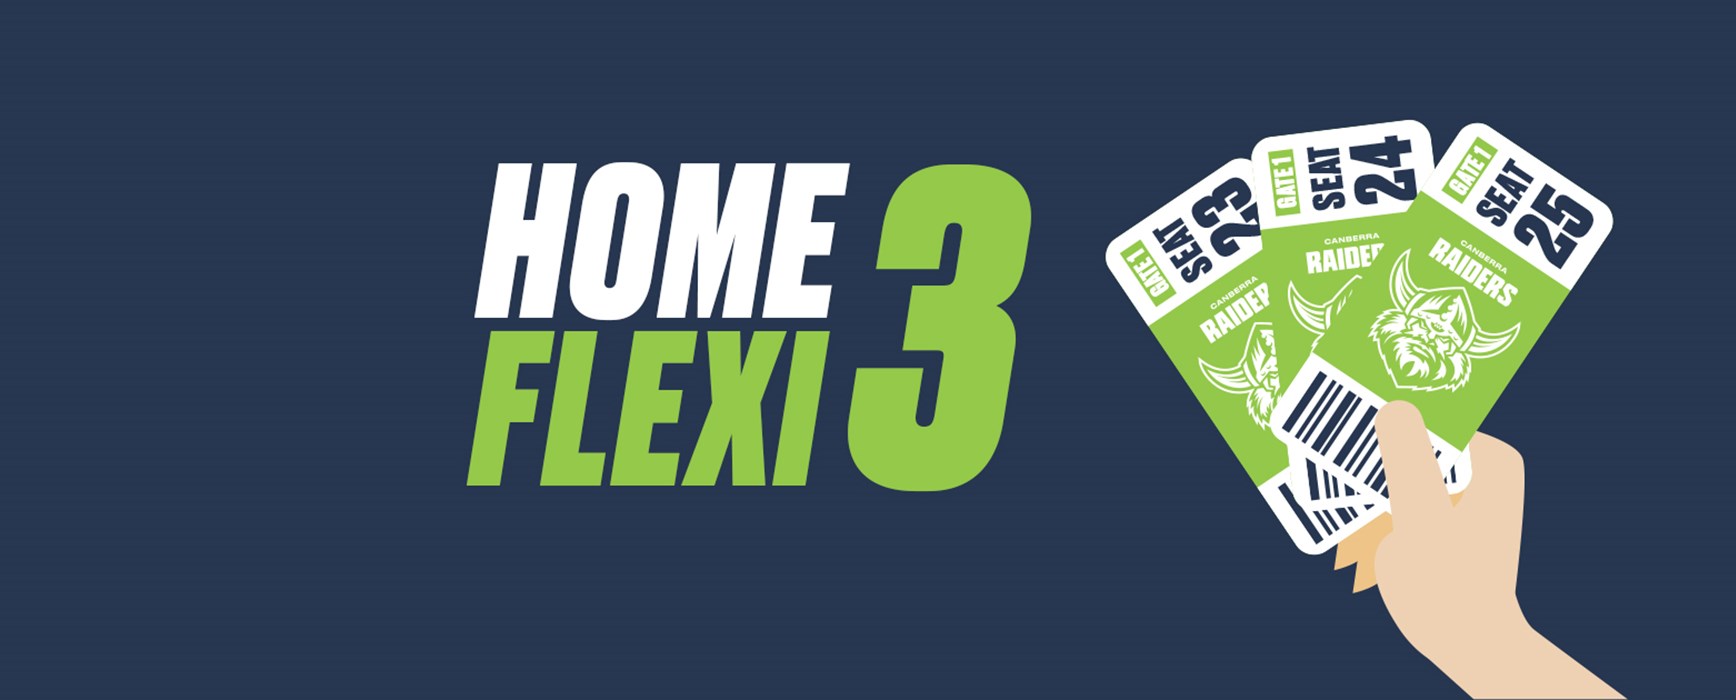 Home Flexi 3